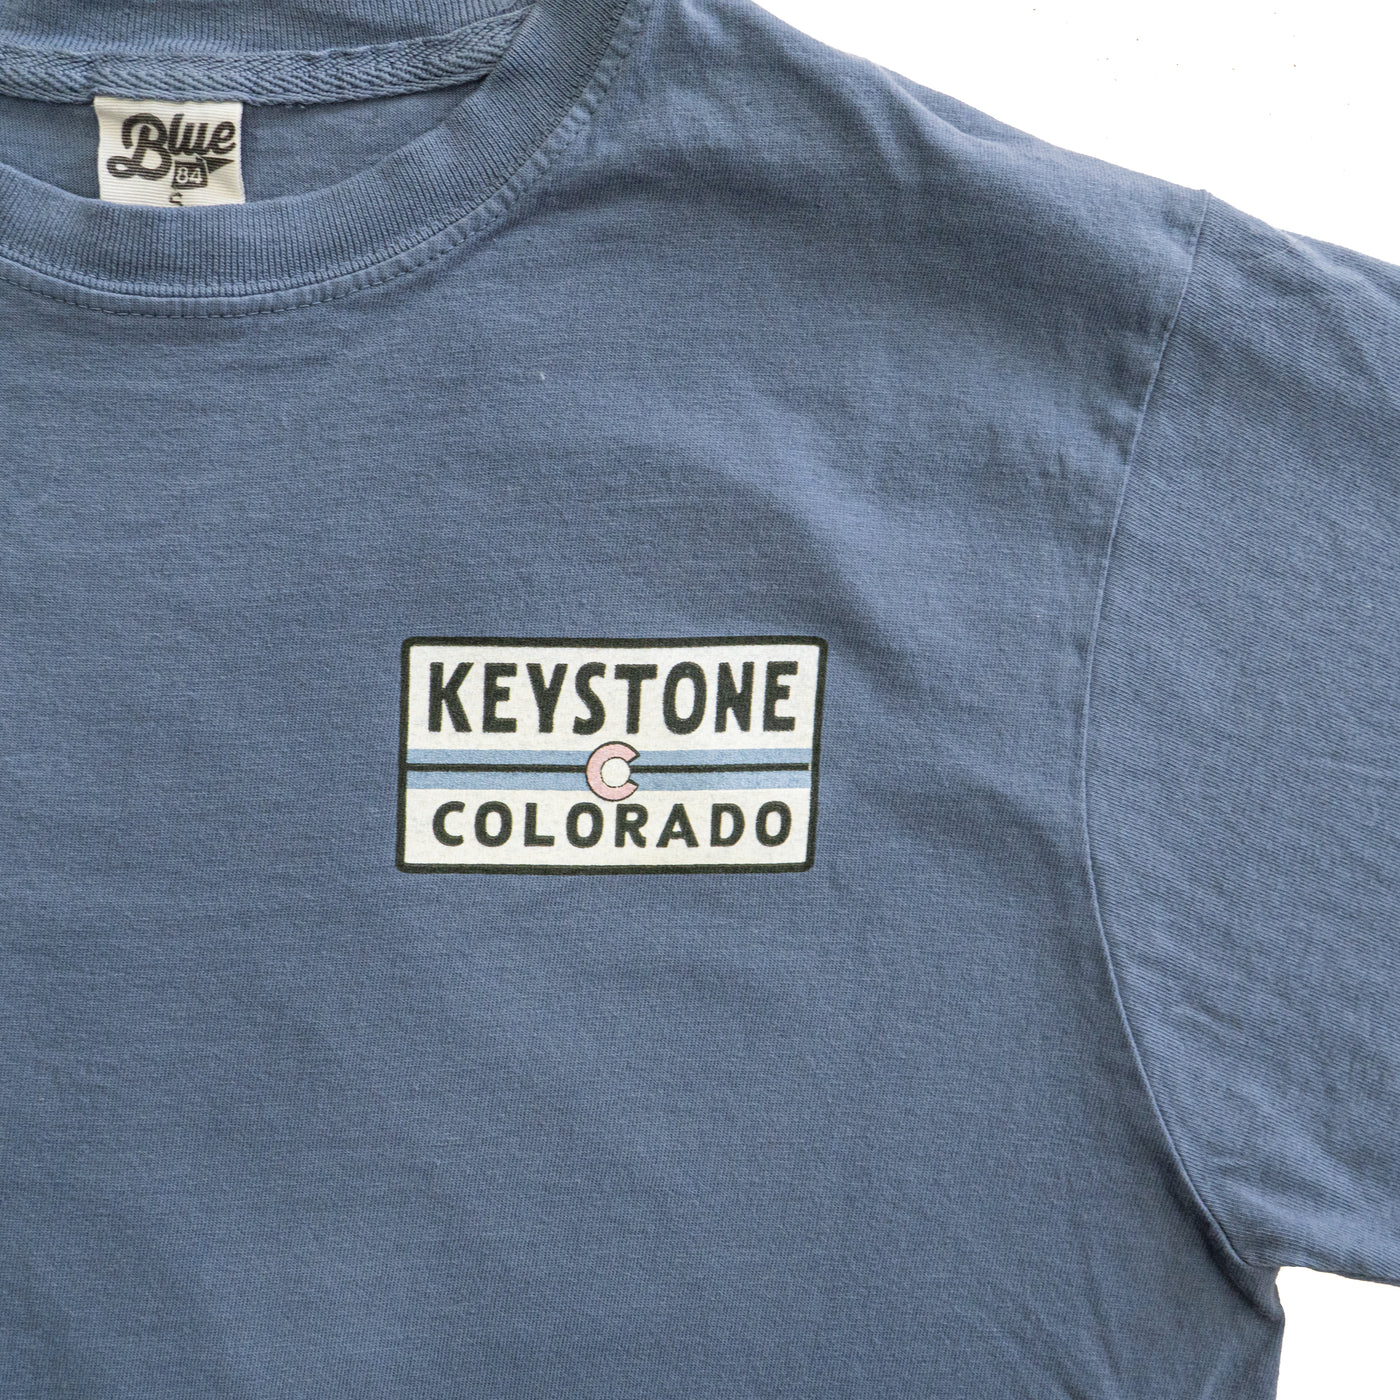 Keystone Elevation Shirt